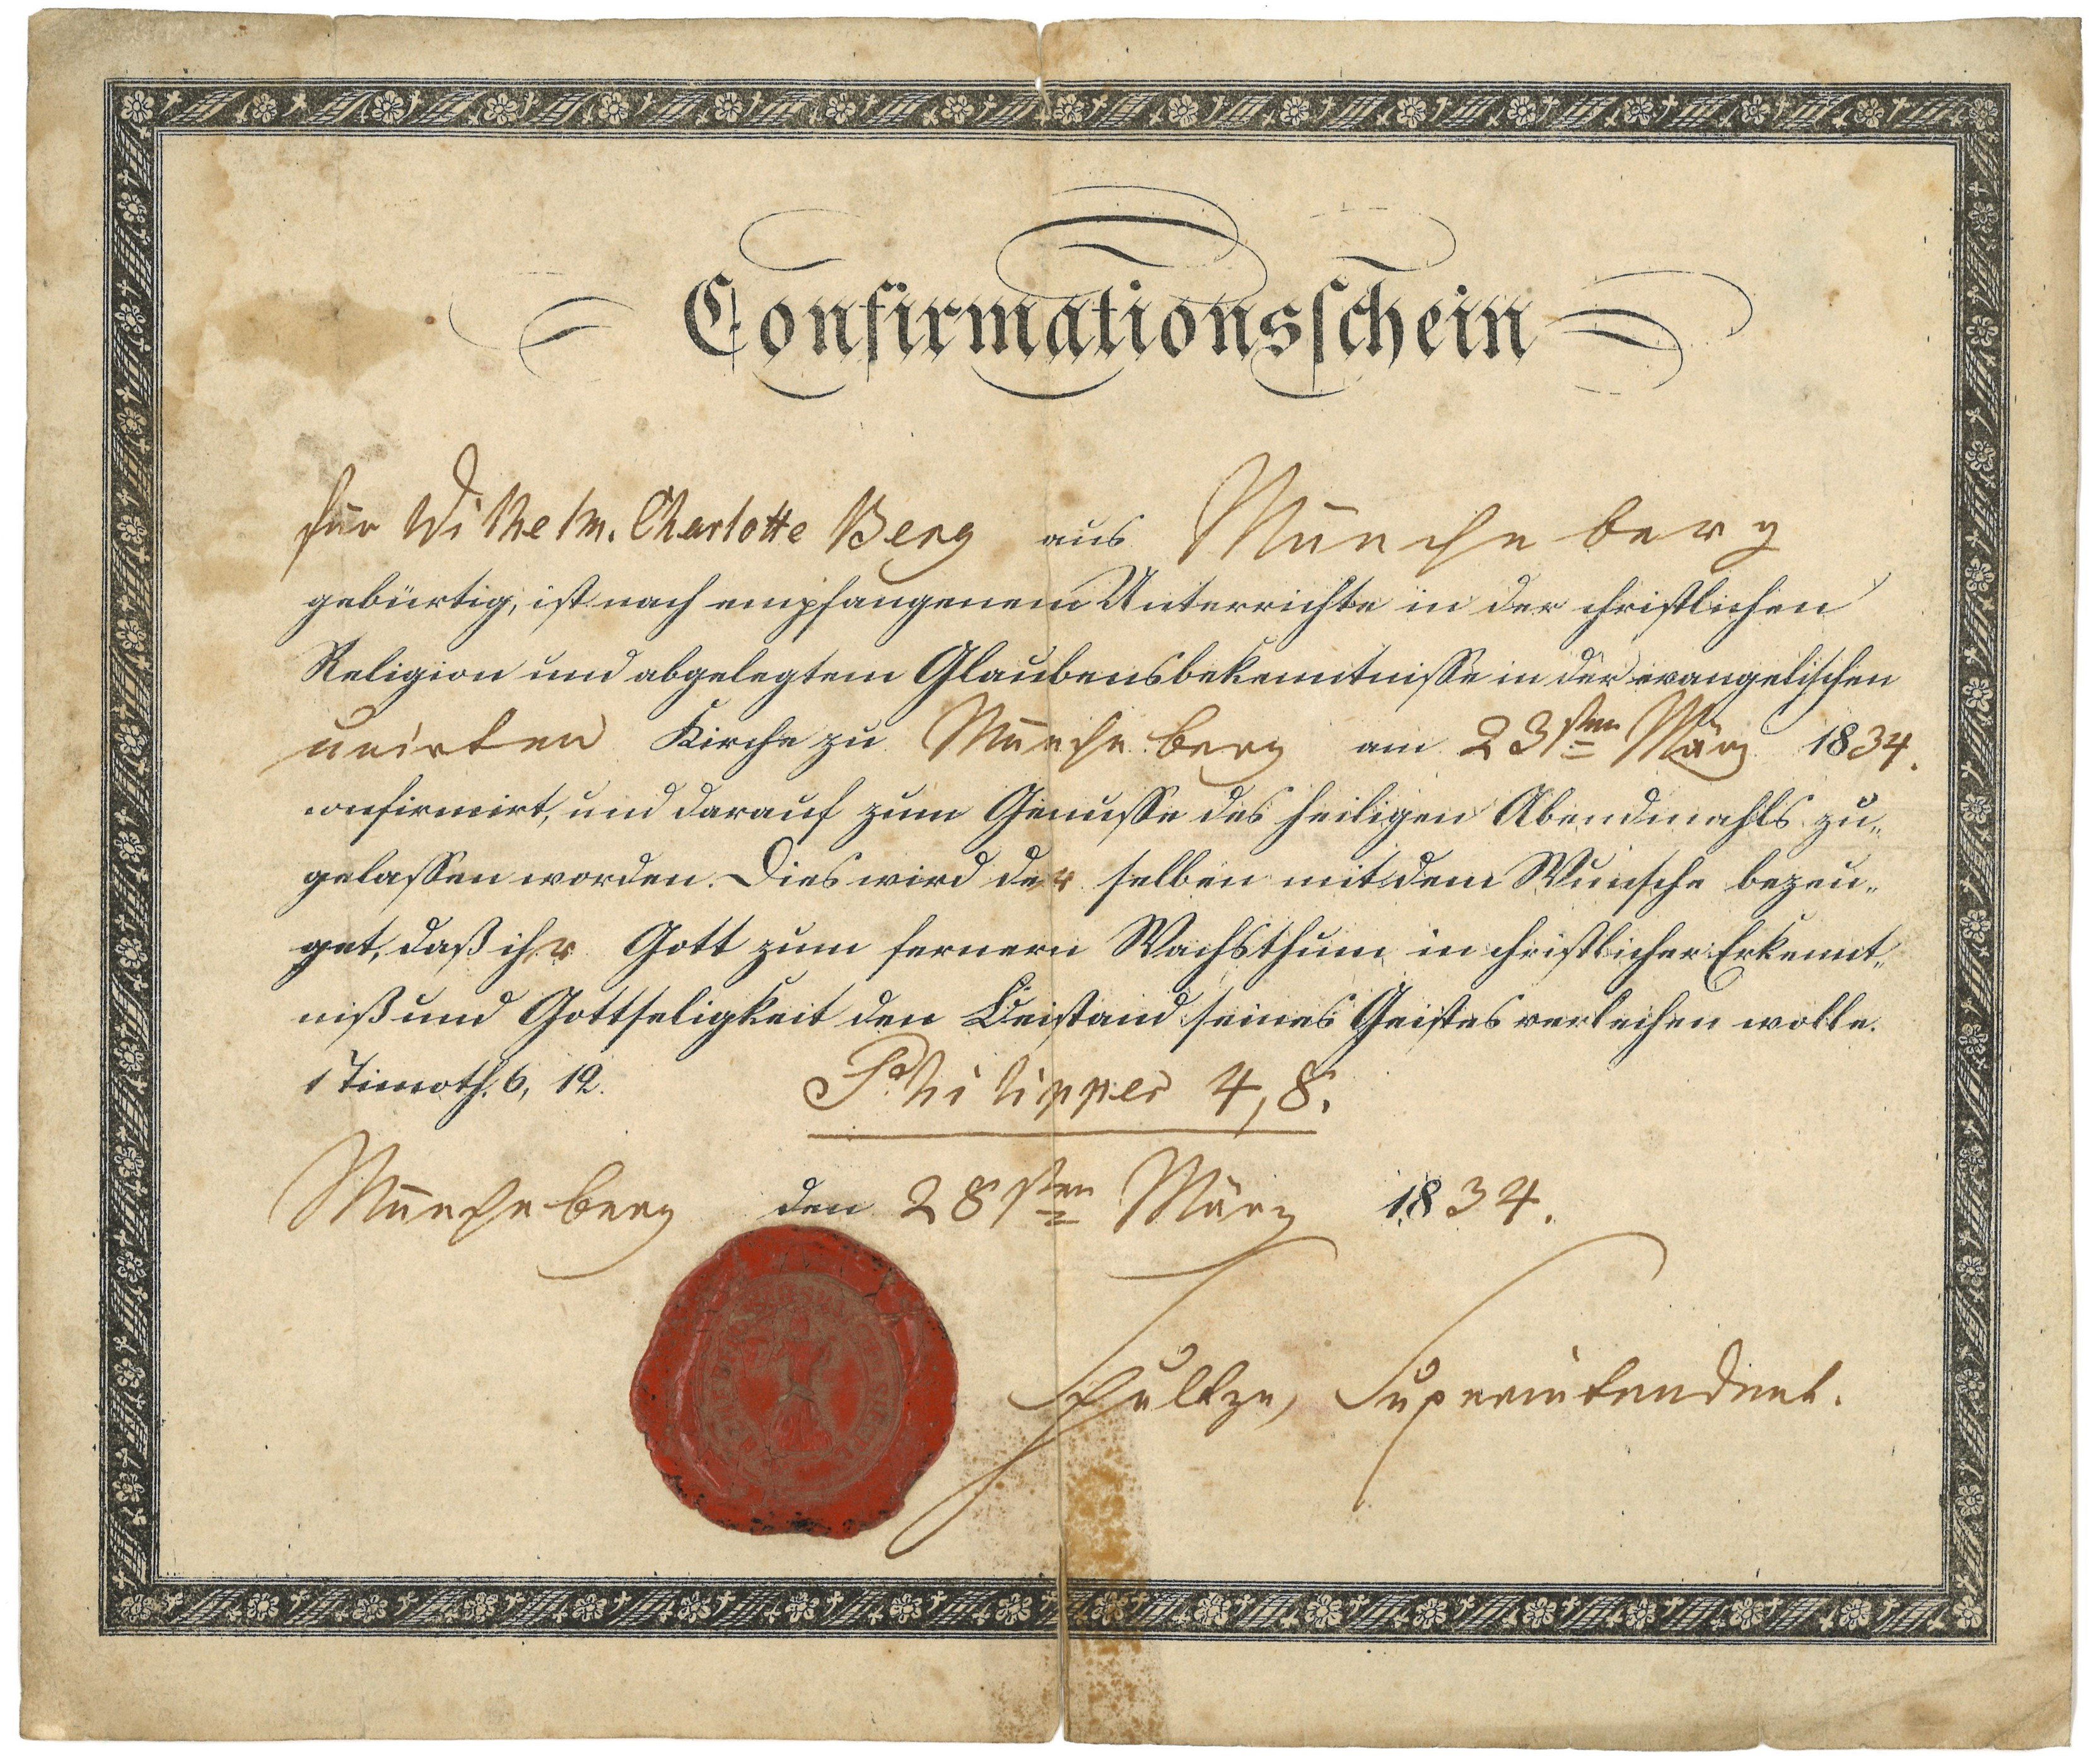 Konfirmationsschein für Wilhelmine Charlotte Berg in Müncheberg 1834 (Landesgeschichtliche Vereinigung für die Mark Brandenburg e.V., Archiv CC BY)